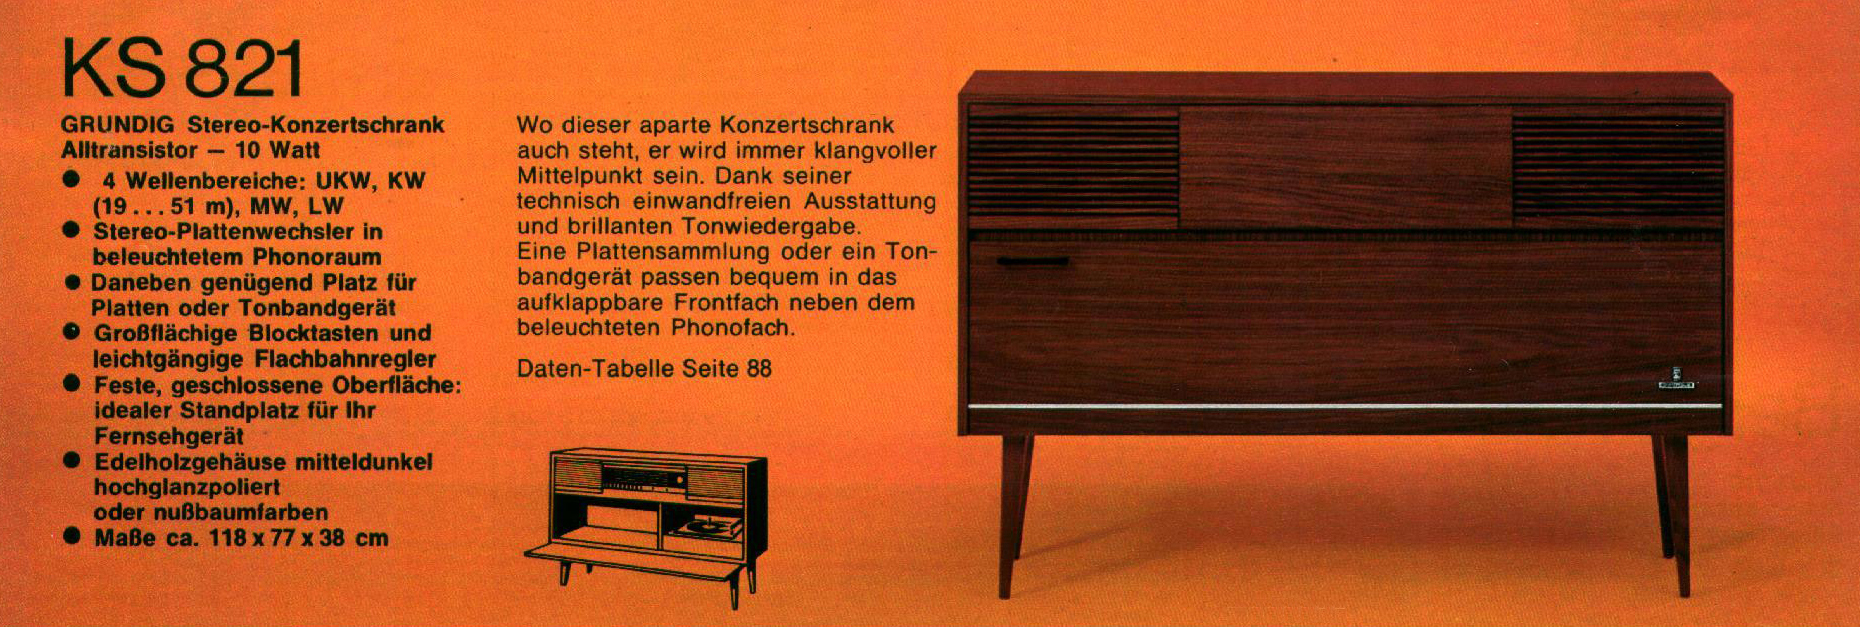 Grundig KS-821-Prospekt-1972.jpg